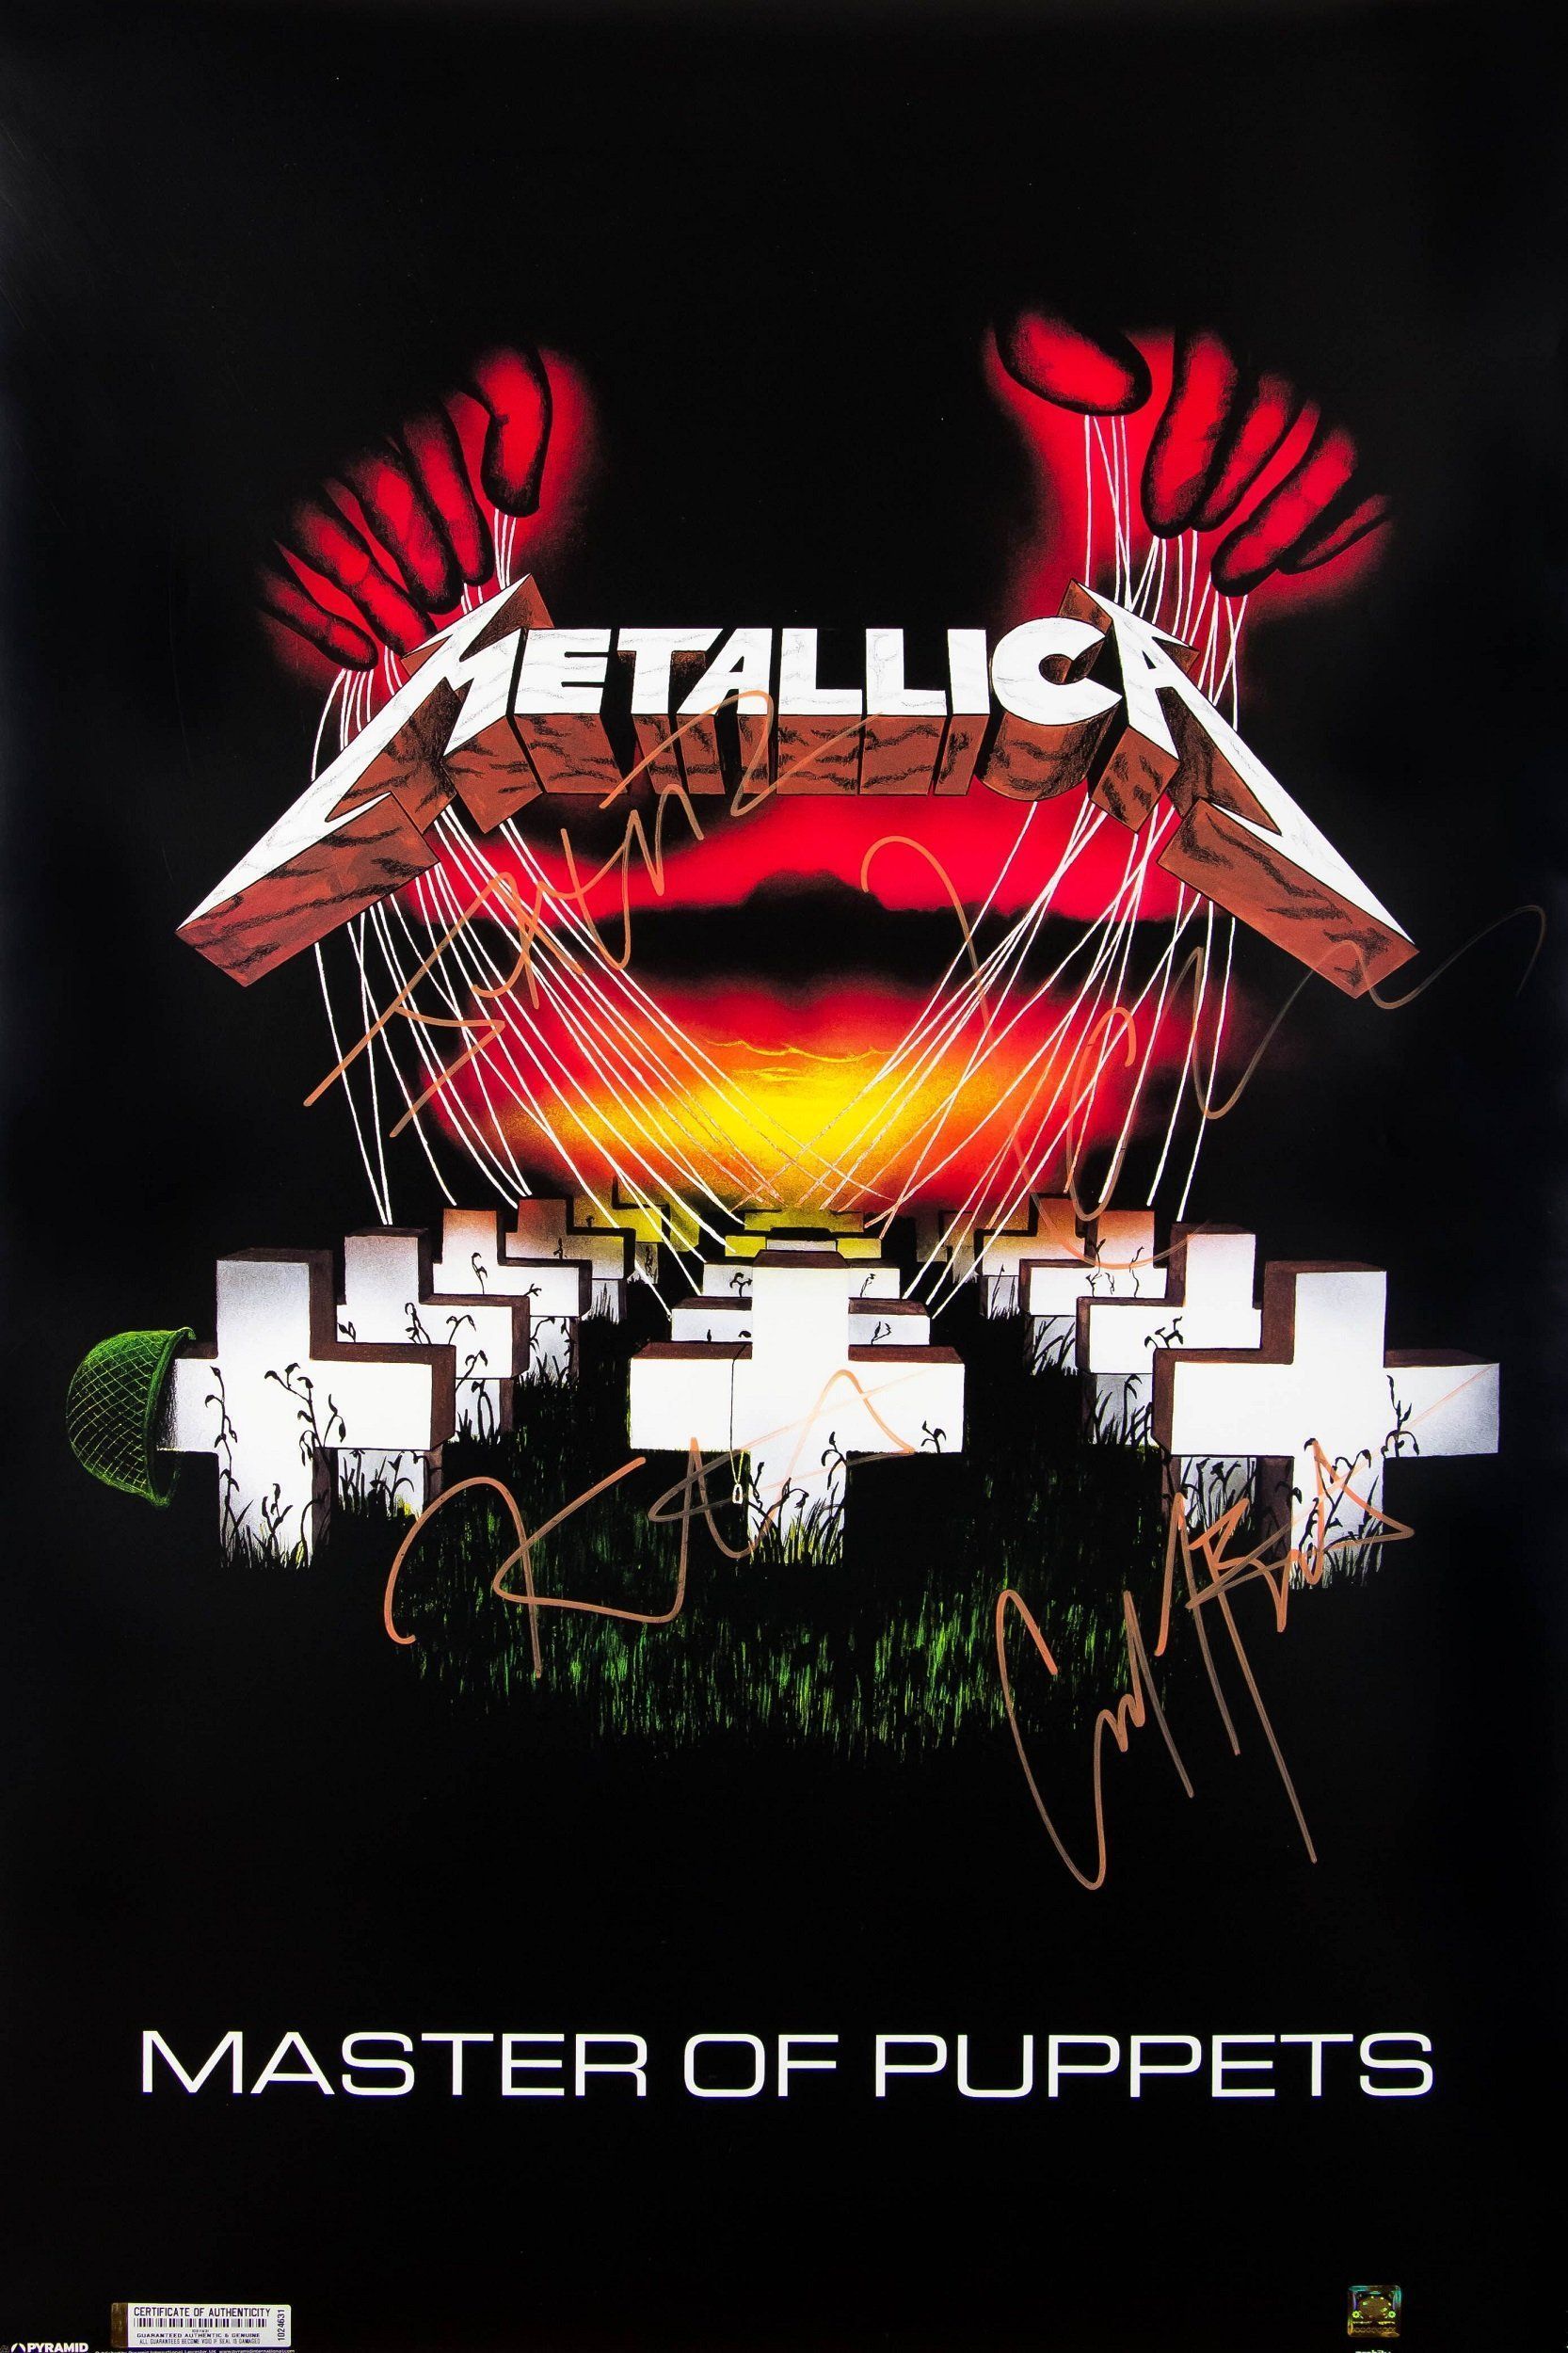 Metallica Iphone Wallpapers